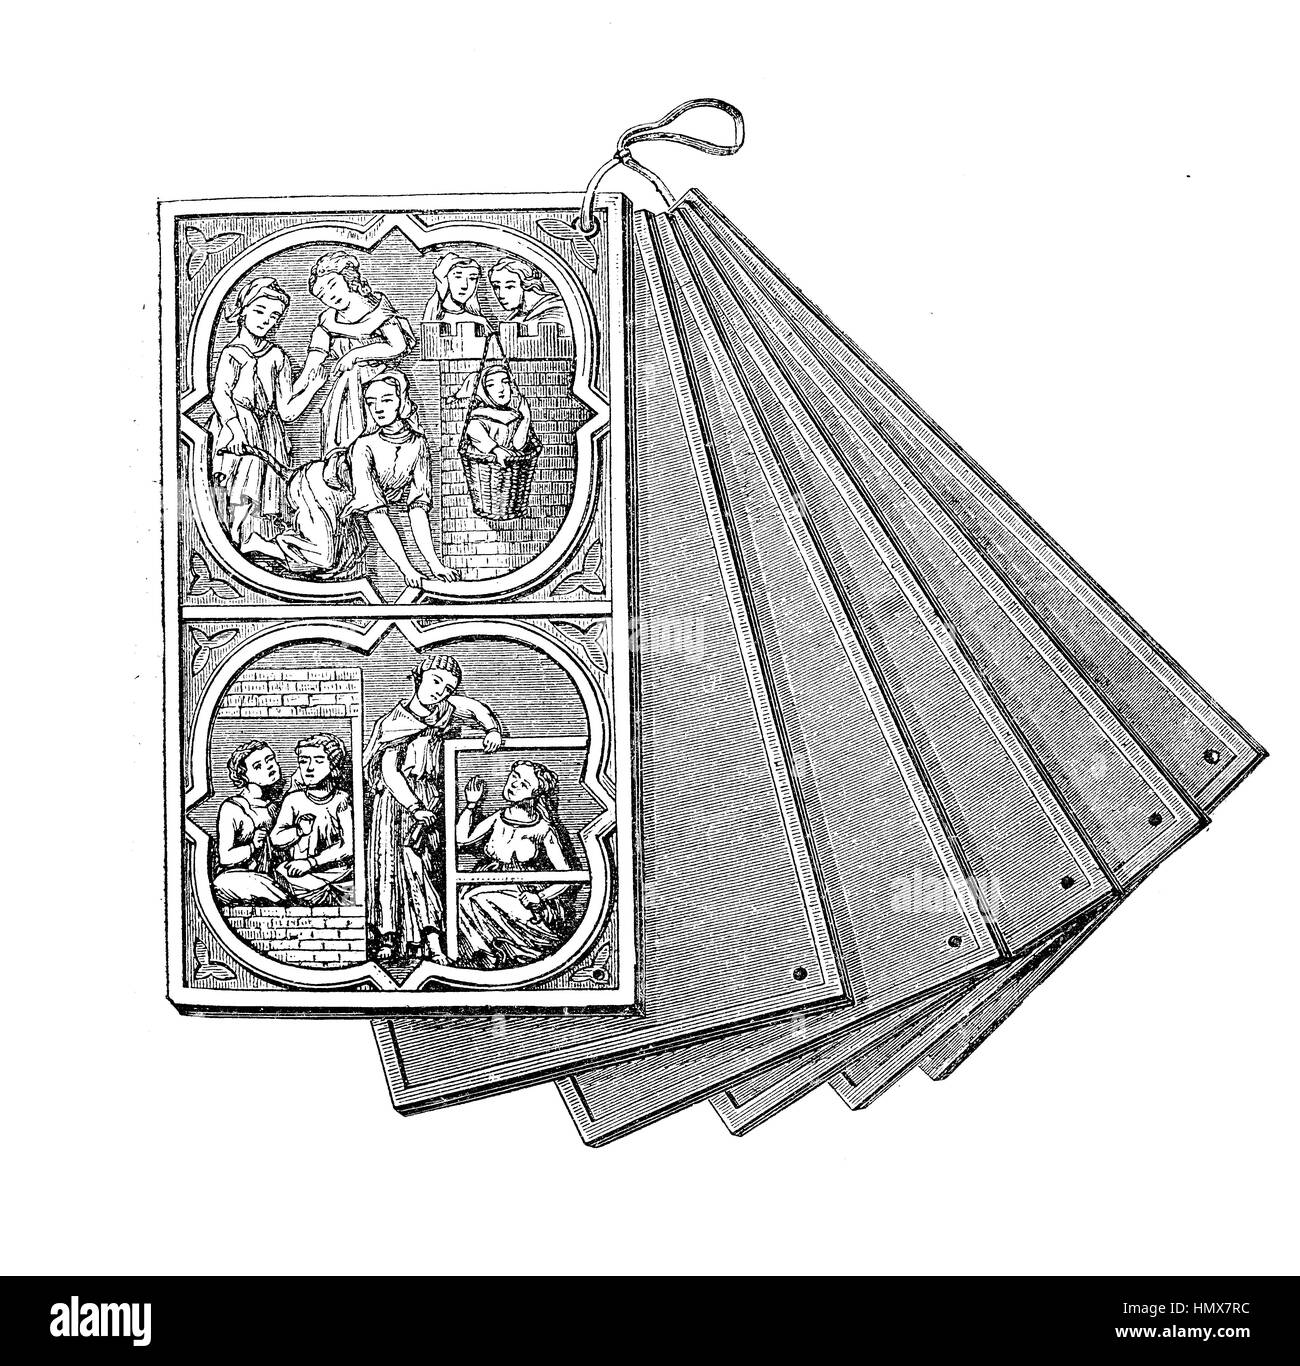 Tabletas de marfil tallado de antigüedades, coleccionables, objetos usados como borrador Foto de stock